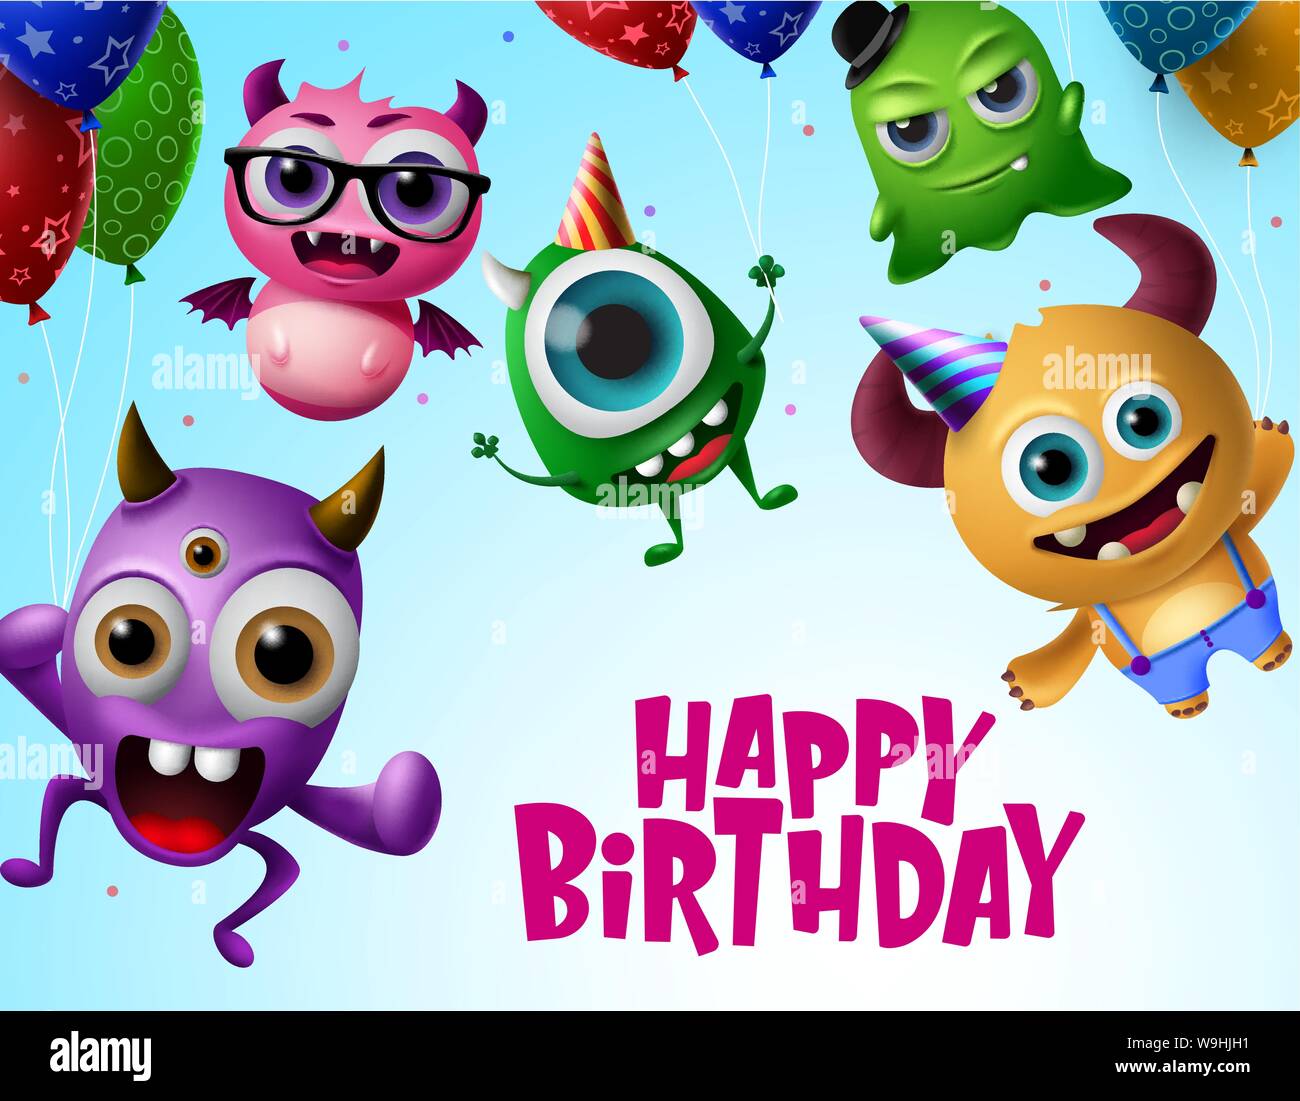 Happy birthday mit Monster Zeichen vektor design. Alles Gute zum Geburtstag Text in Fliegen kleine Monster Kreatur mit bunten Luftballons. Stock Vektor